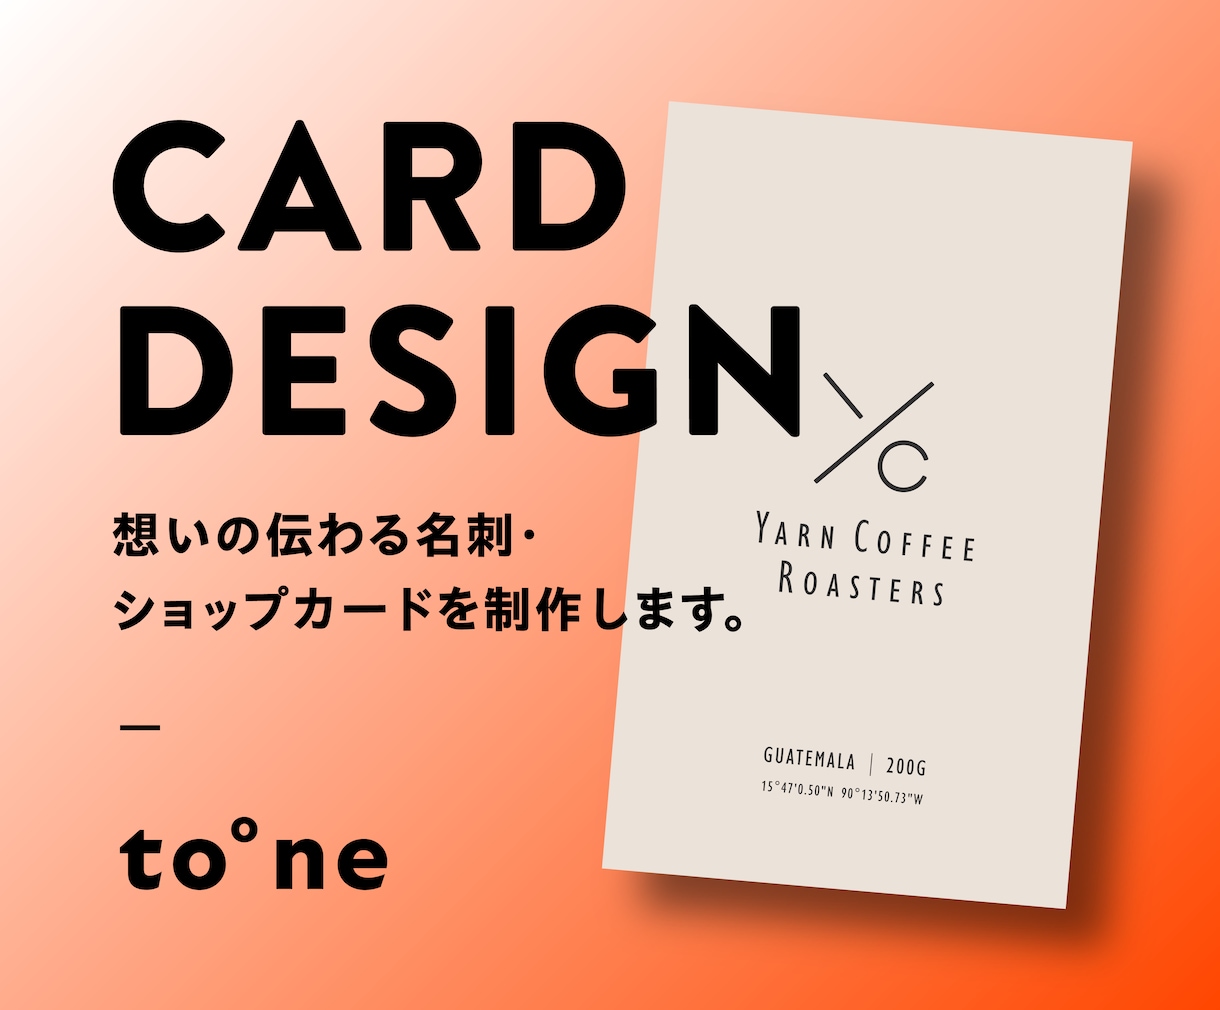 想いの伝わる名刺・ショップカードを制作します シンプルながら細部までこだわったカードデザインをご提案します イメージ1